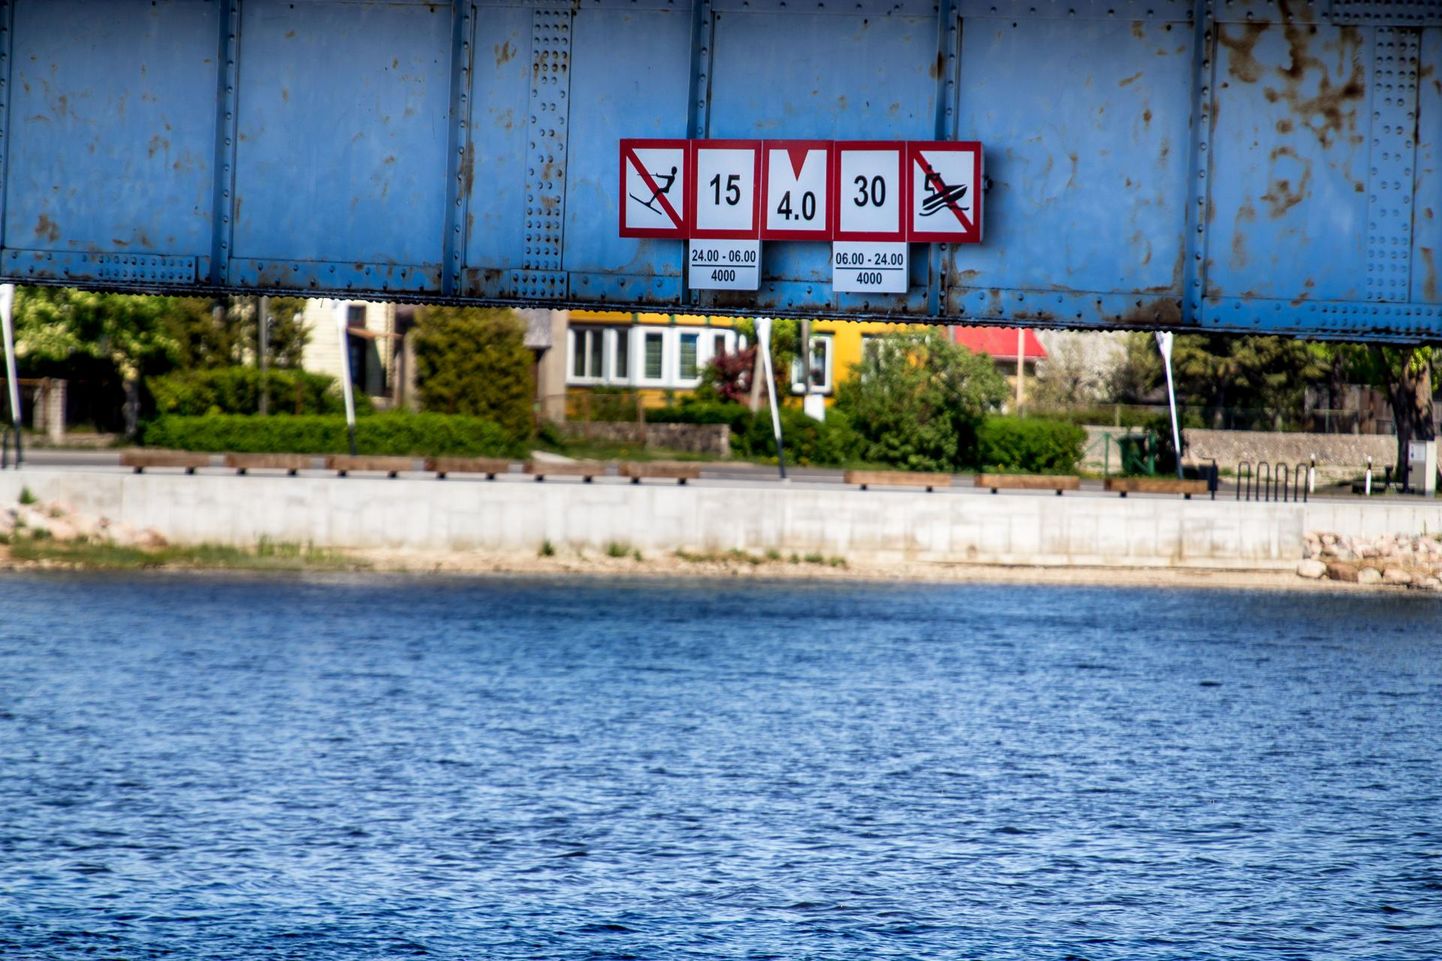 2016. aastast ei kehti Pärnu linnavolikogu kehtestatud määrus, mis reguleeris veesõidukite liiklust Pärnu, Sauga ja Reiu jõel Pärnu linna piires, ent signaalmärgid “Lainetuse tekitamine keelatud”, “Kiiruse piirang” ja “Jetisõit keelatud” on sildadel tänini.